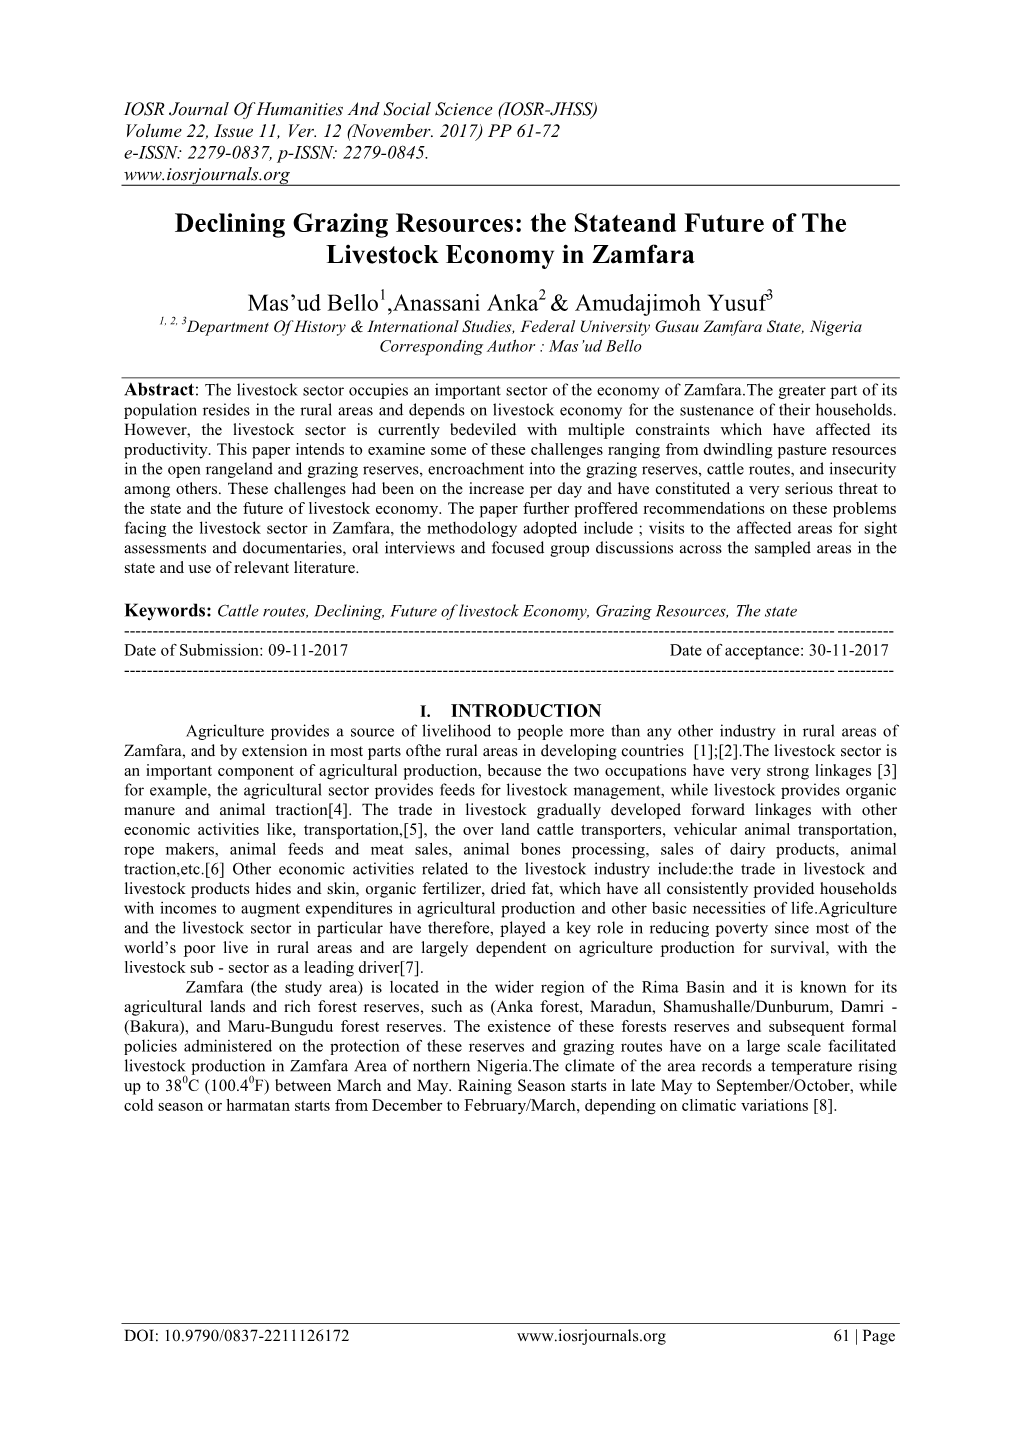 The Stateand Future of the Livestock Economy in Zamfara